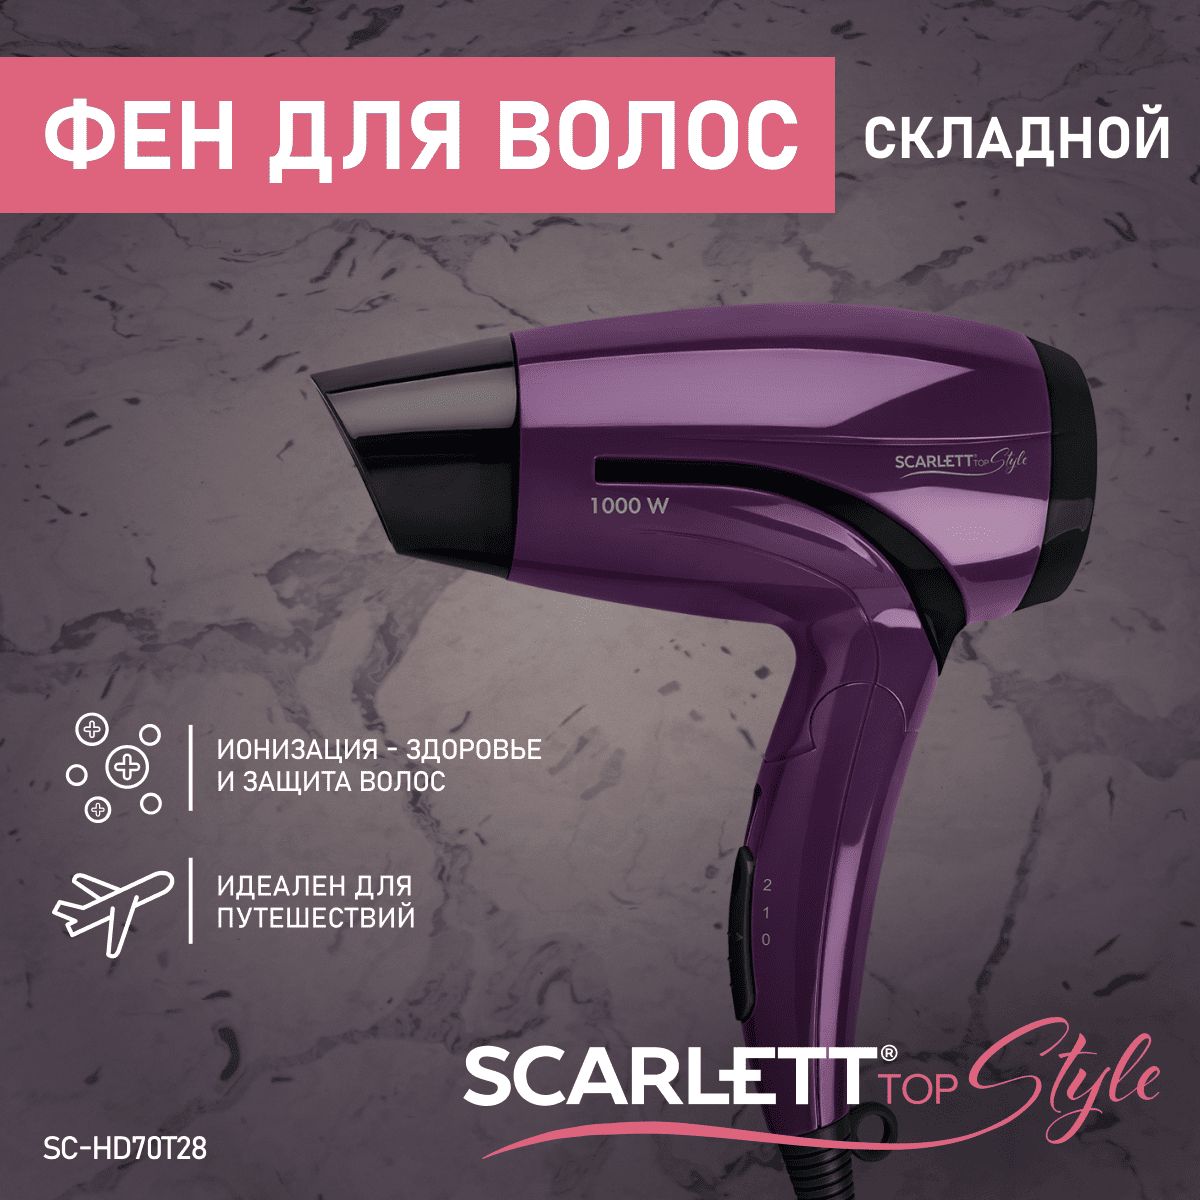 Фен Scarlett SC-HD70T28 1200 Вт фиолетовый фен maestro mr 207 1200 вт фиолетовый